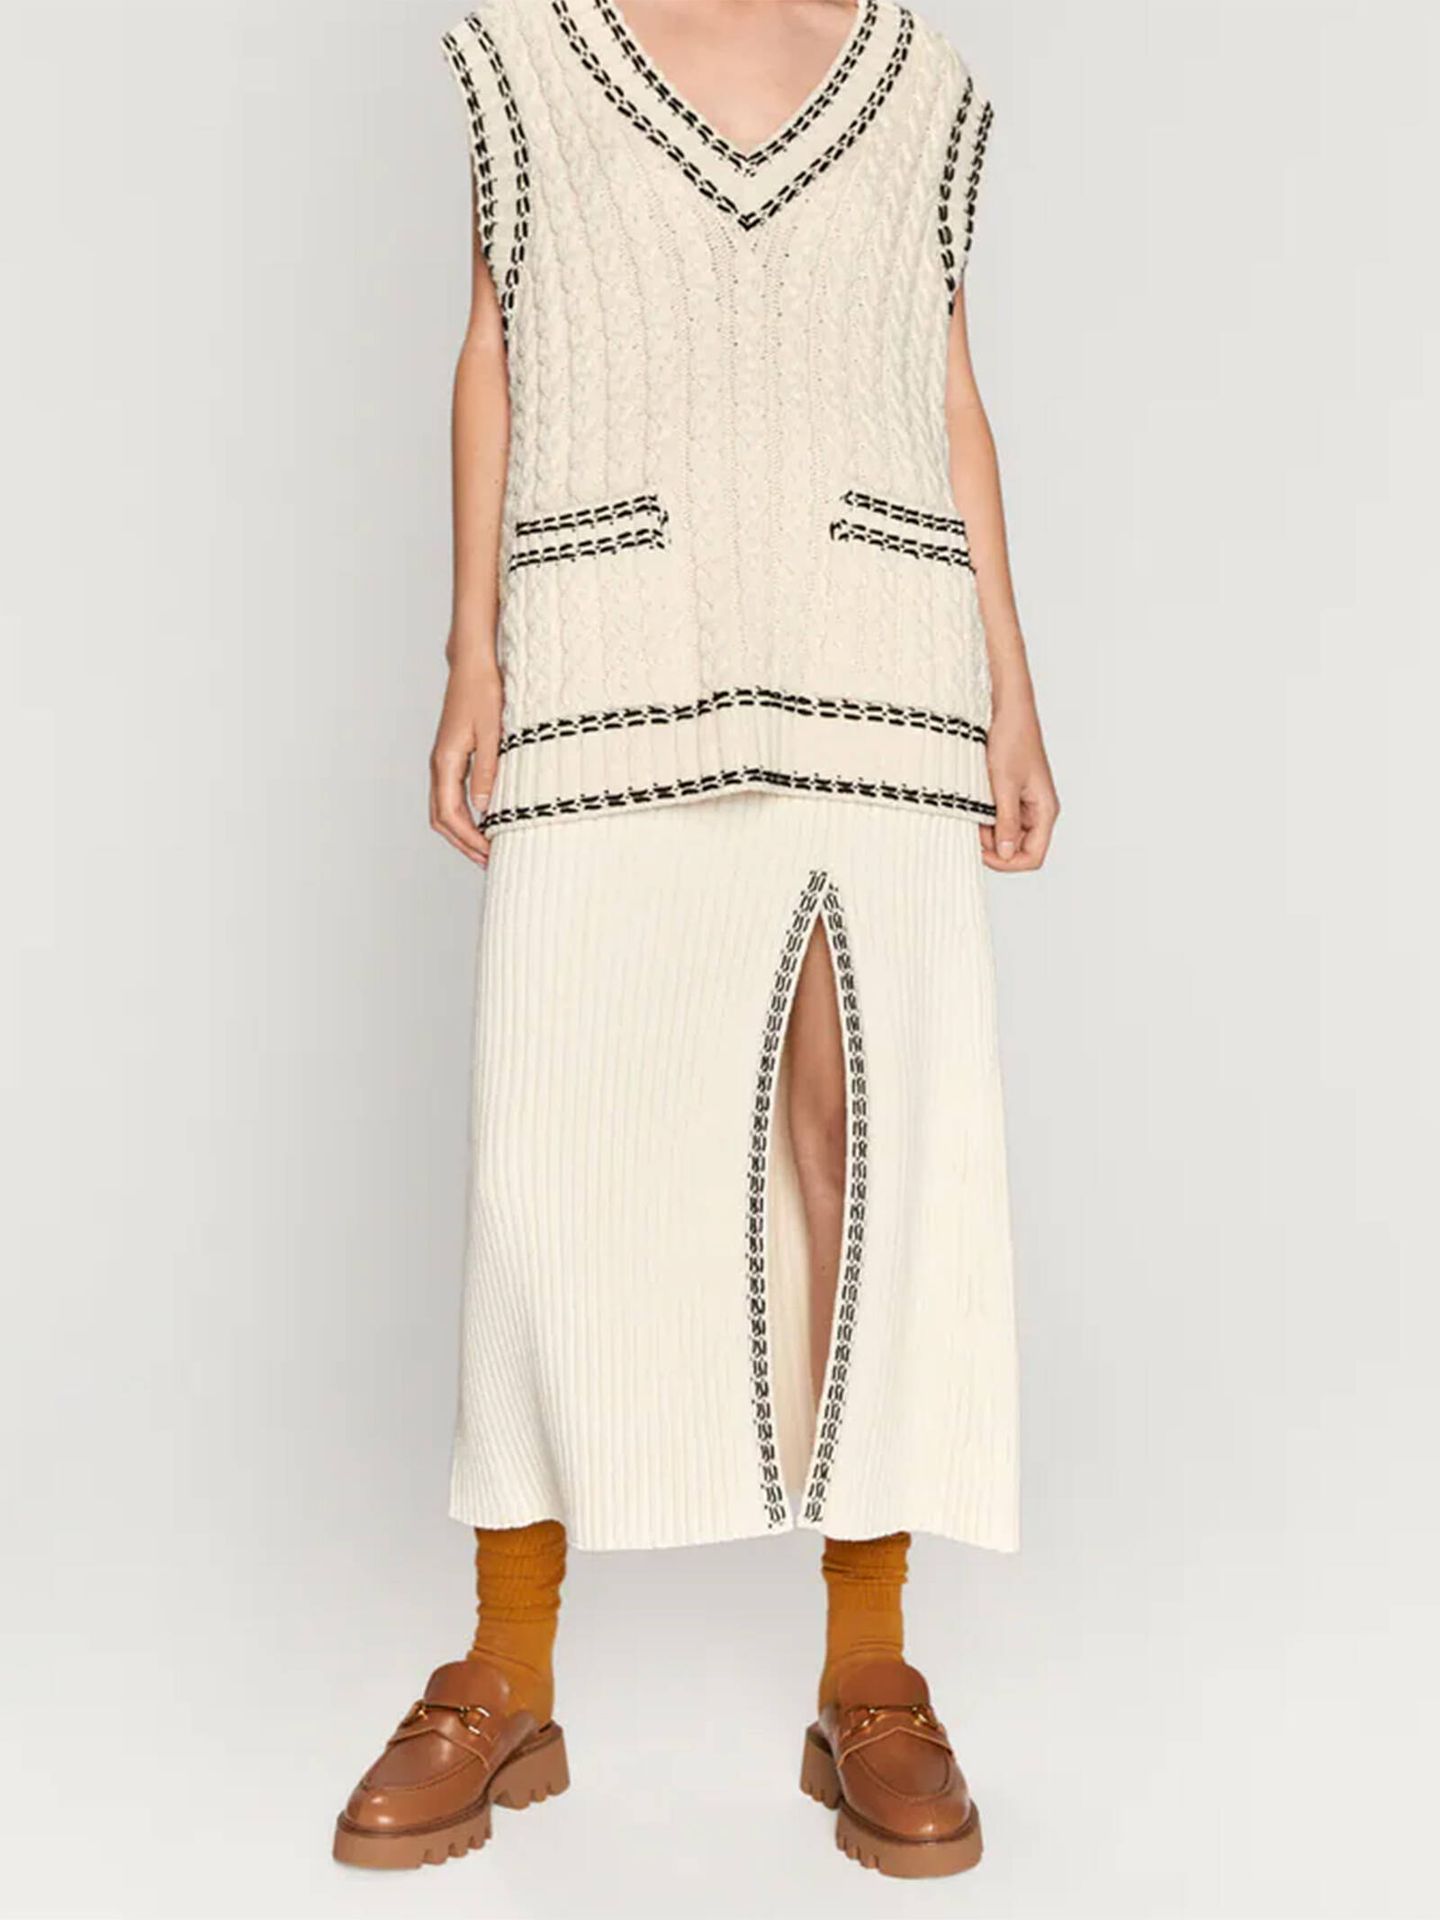 Los mocasines de Zara de tendencia para combinar con cualquier prenda. (Cortesía)